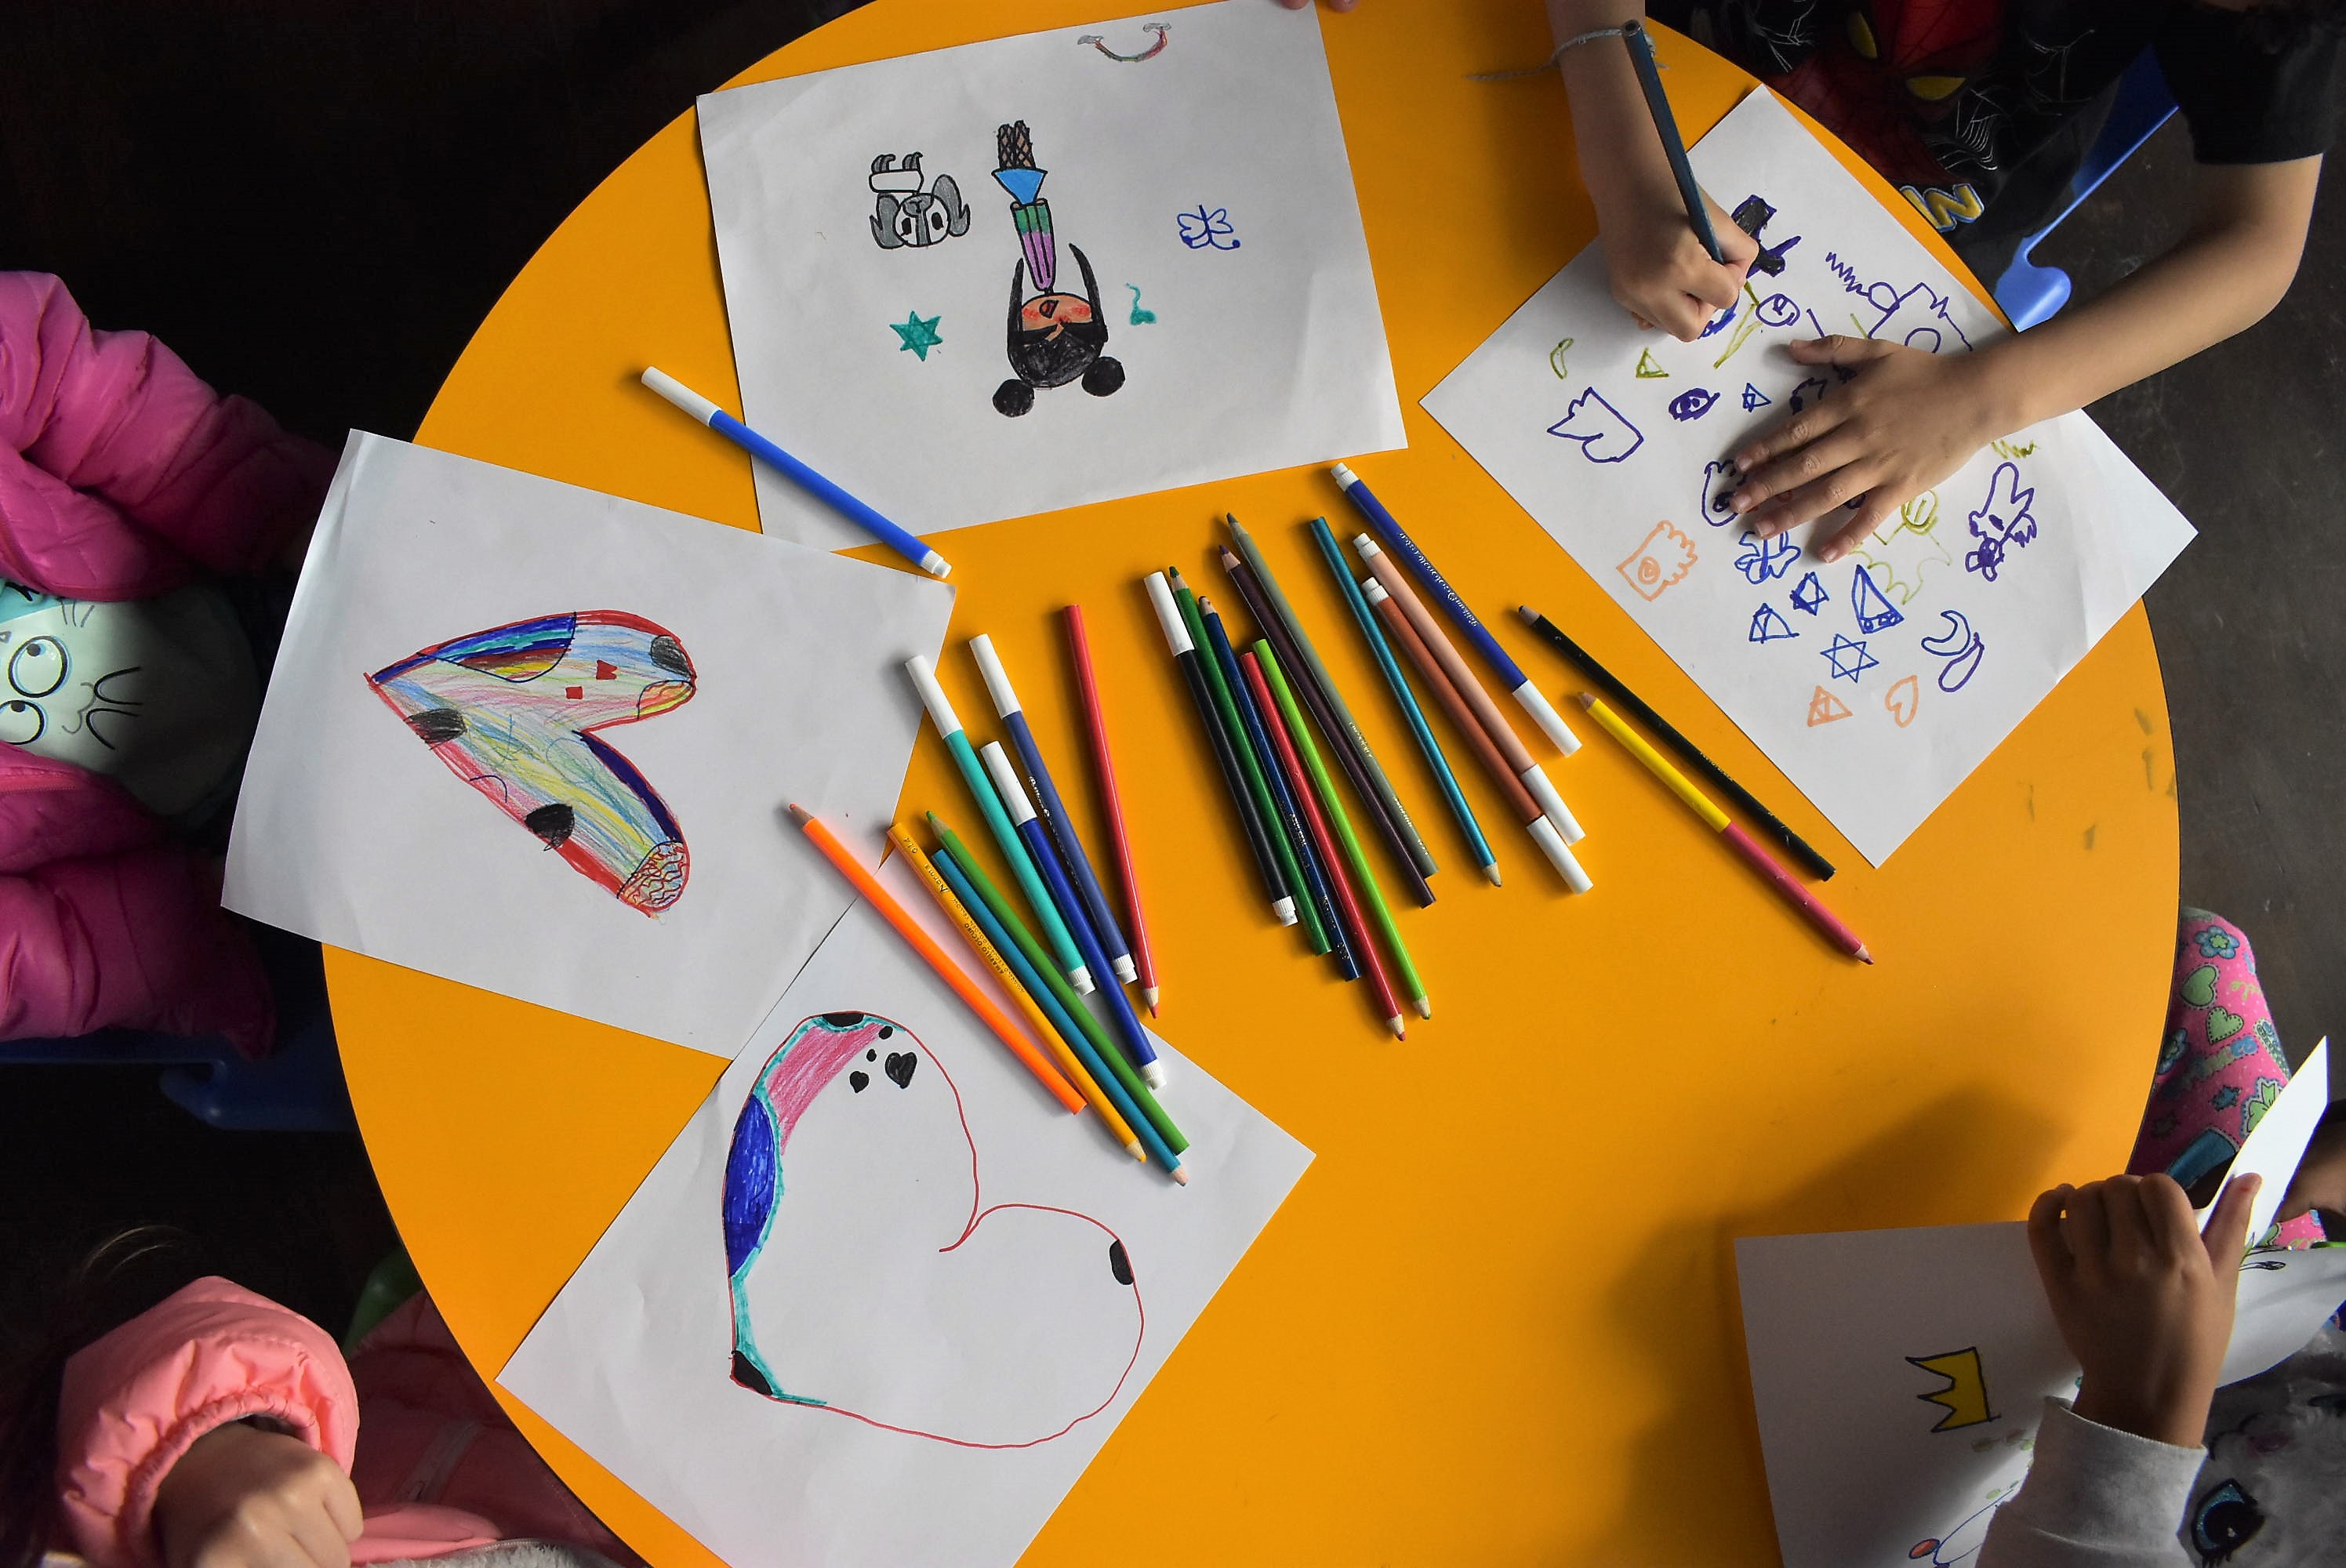 niños y niñas dibujando con lapices de colores sobre una mesa color amarilla.